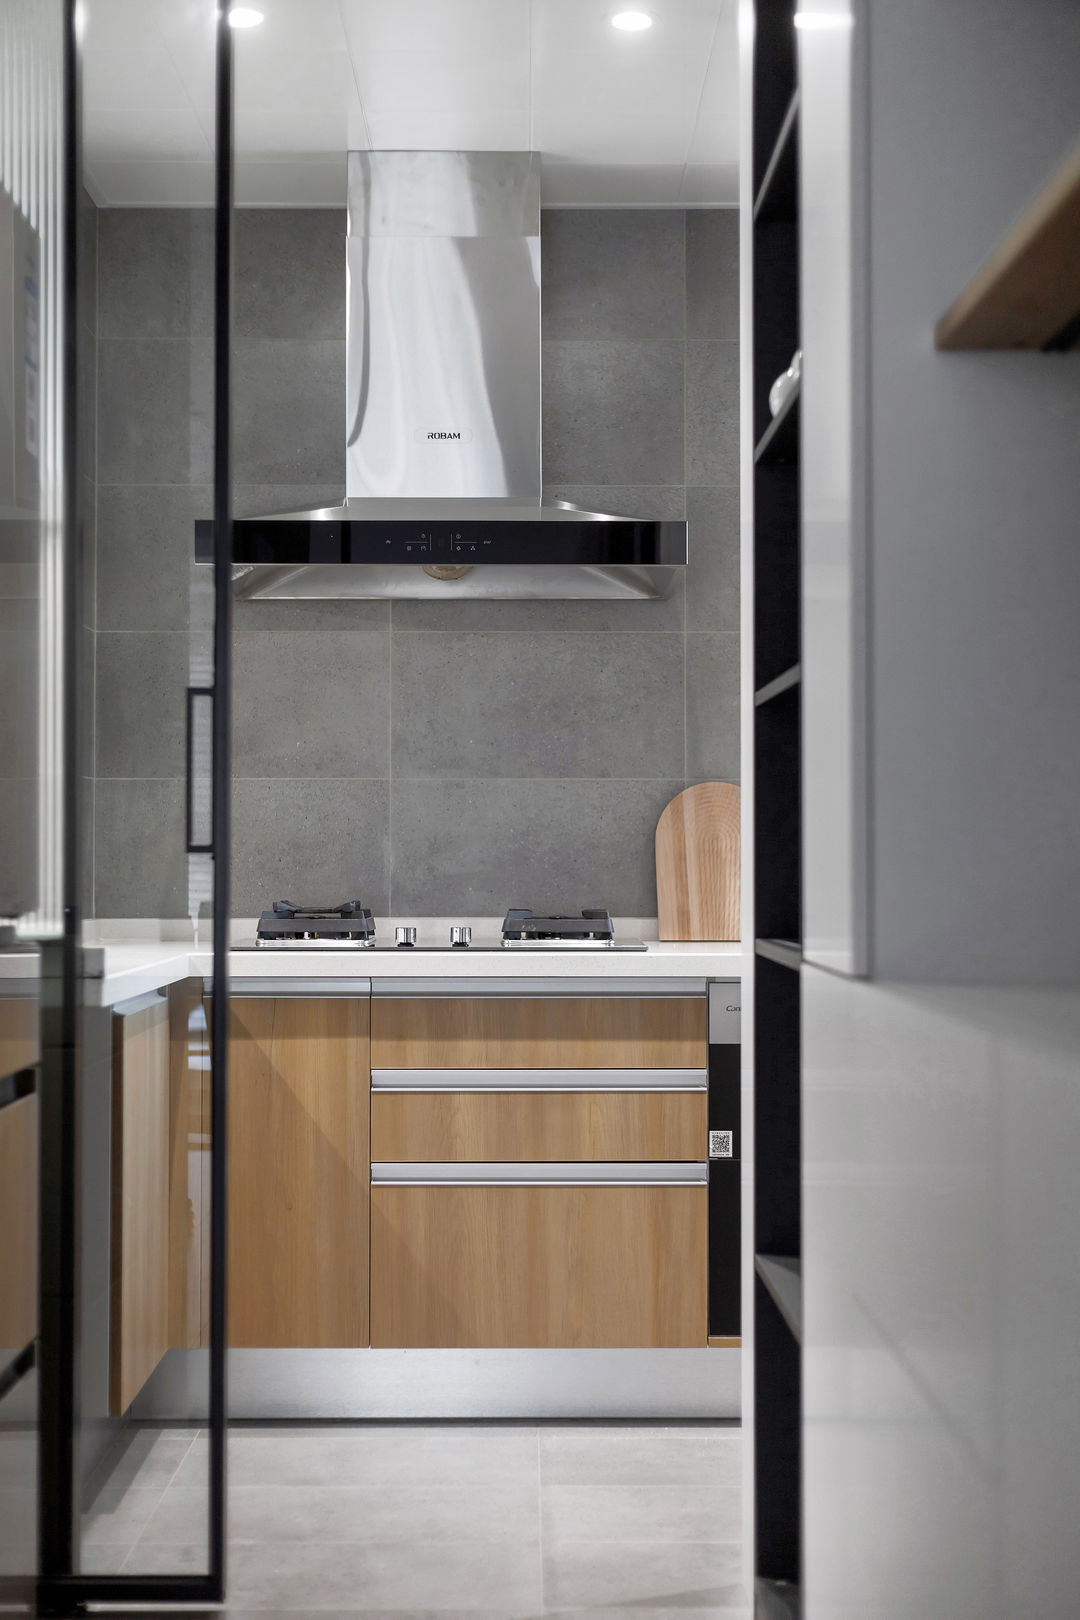 #我家最美的一角# 整个厨房采用灰色的设计，显得非常的简单大方。